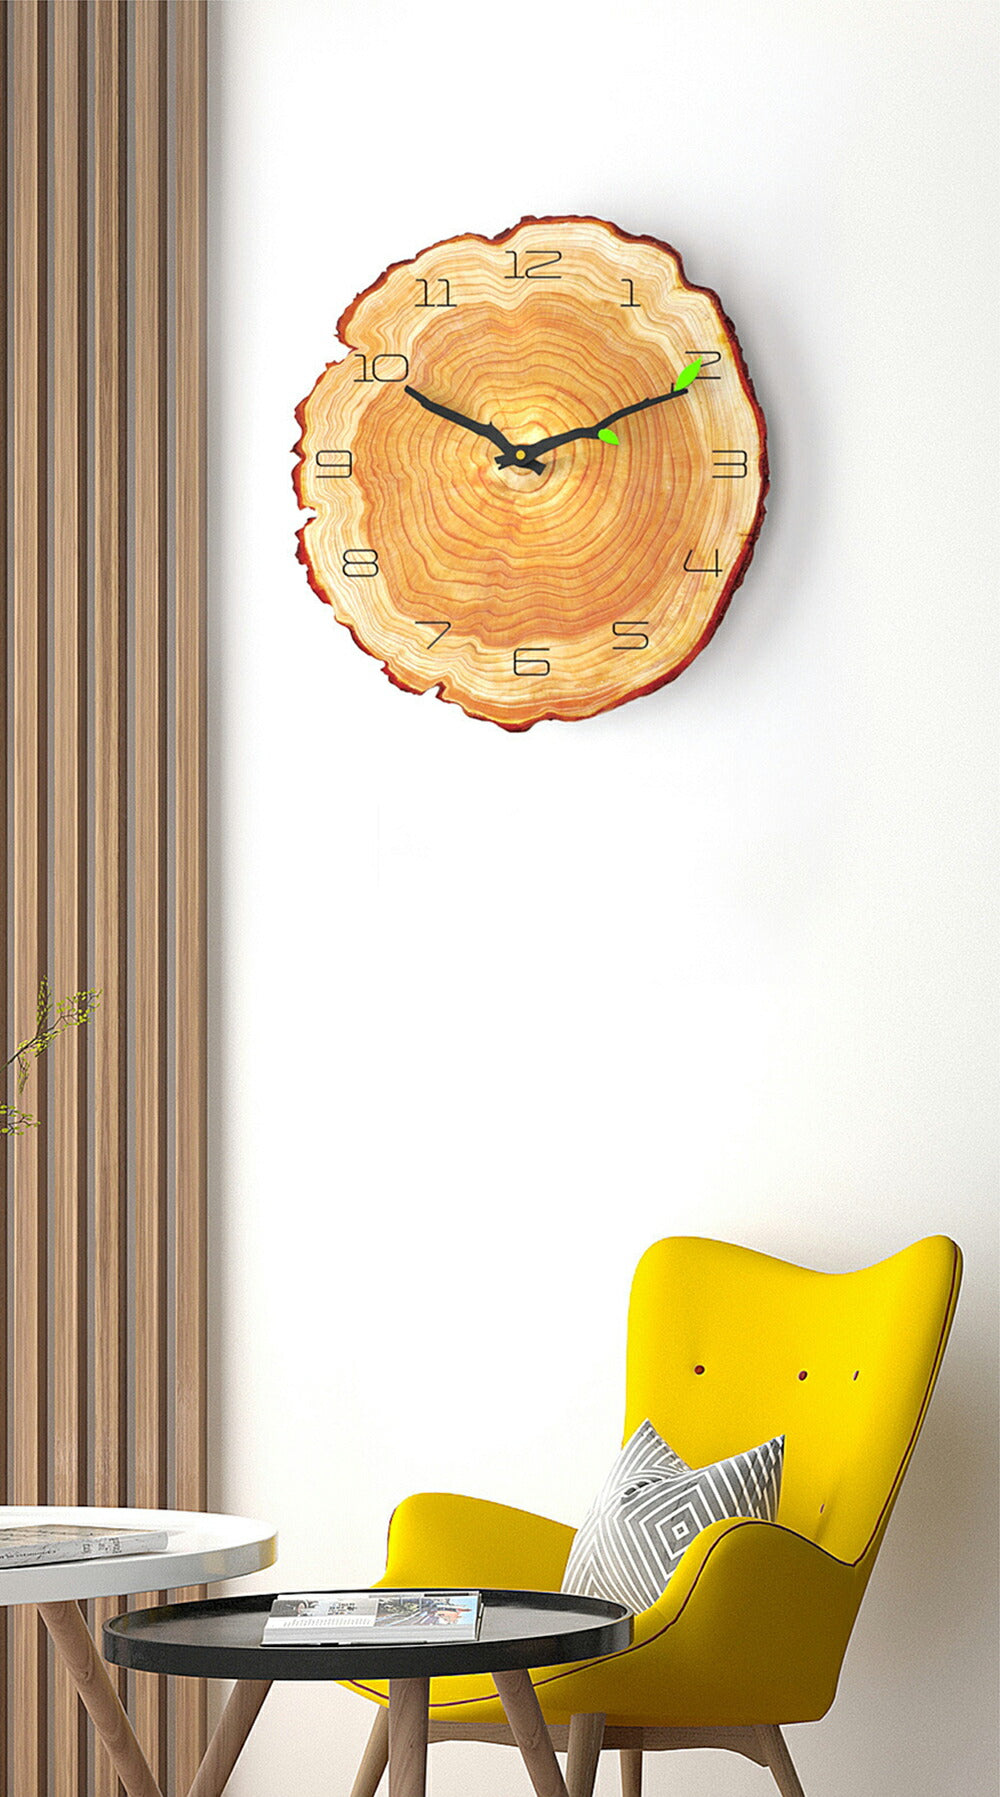 敬老の日プレゼント壁掛け時計年輪掛け時計アニュアル・リングおしゃれかわいいシンプル見やすい北欧オリジナル時計クロックウォールクロッククリスマス誕生日プレゼントギフト送料無料